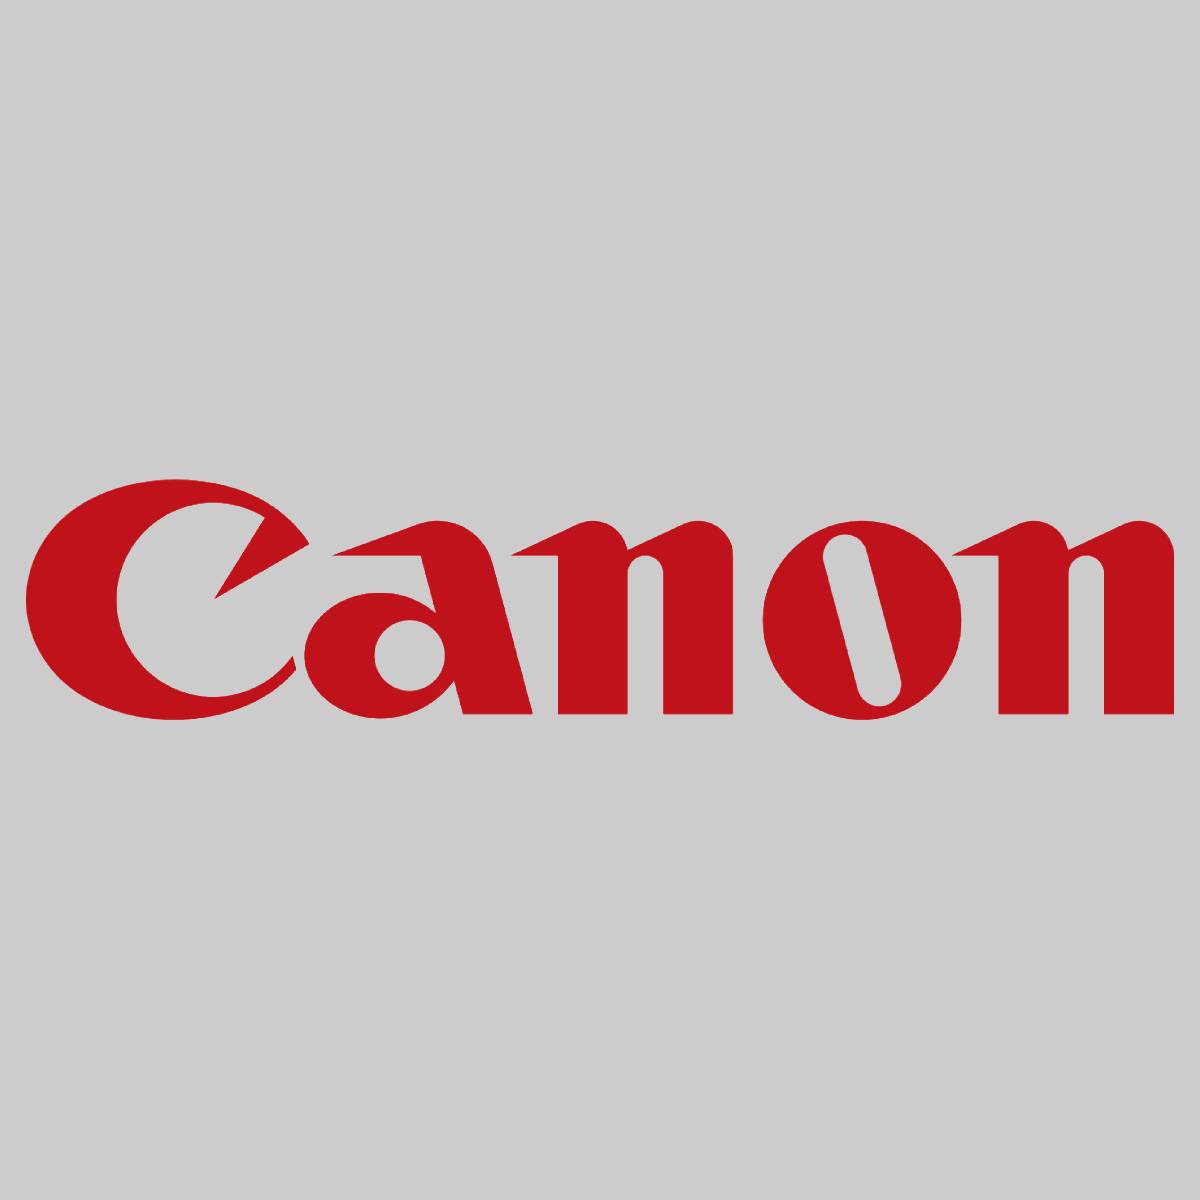 "Originální Canon J1 kazeta se sponkami 6707A001 Finisher 3 x 5 000 für iR 3035 4500